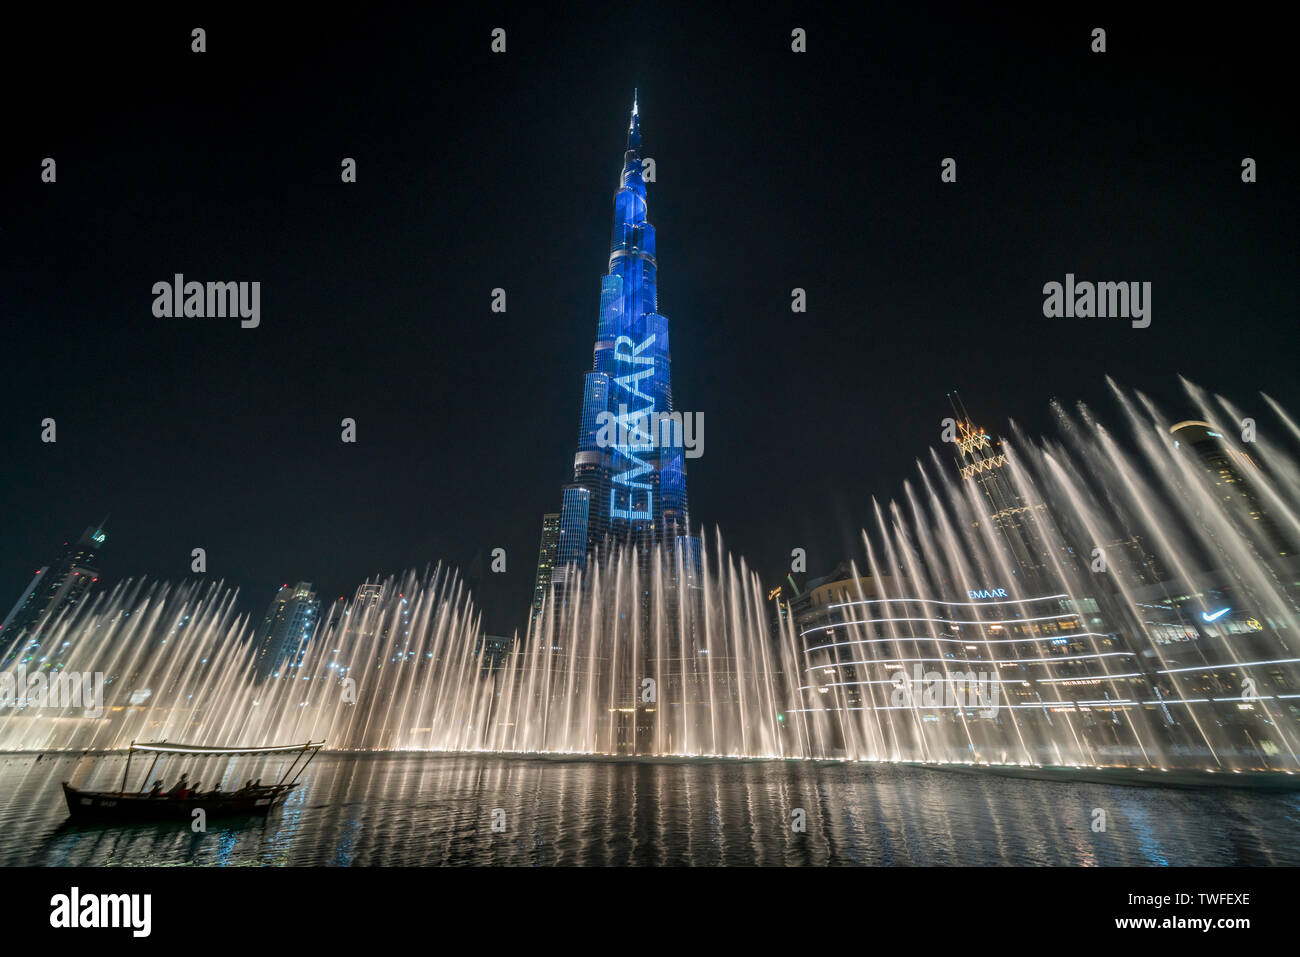 Die Dubai Fountain Tänze unter dem beleuchteten Burj Khalifa als Passagiere auf dem Boot beobachten. Stockfoto